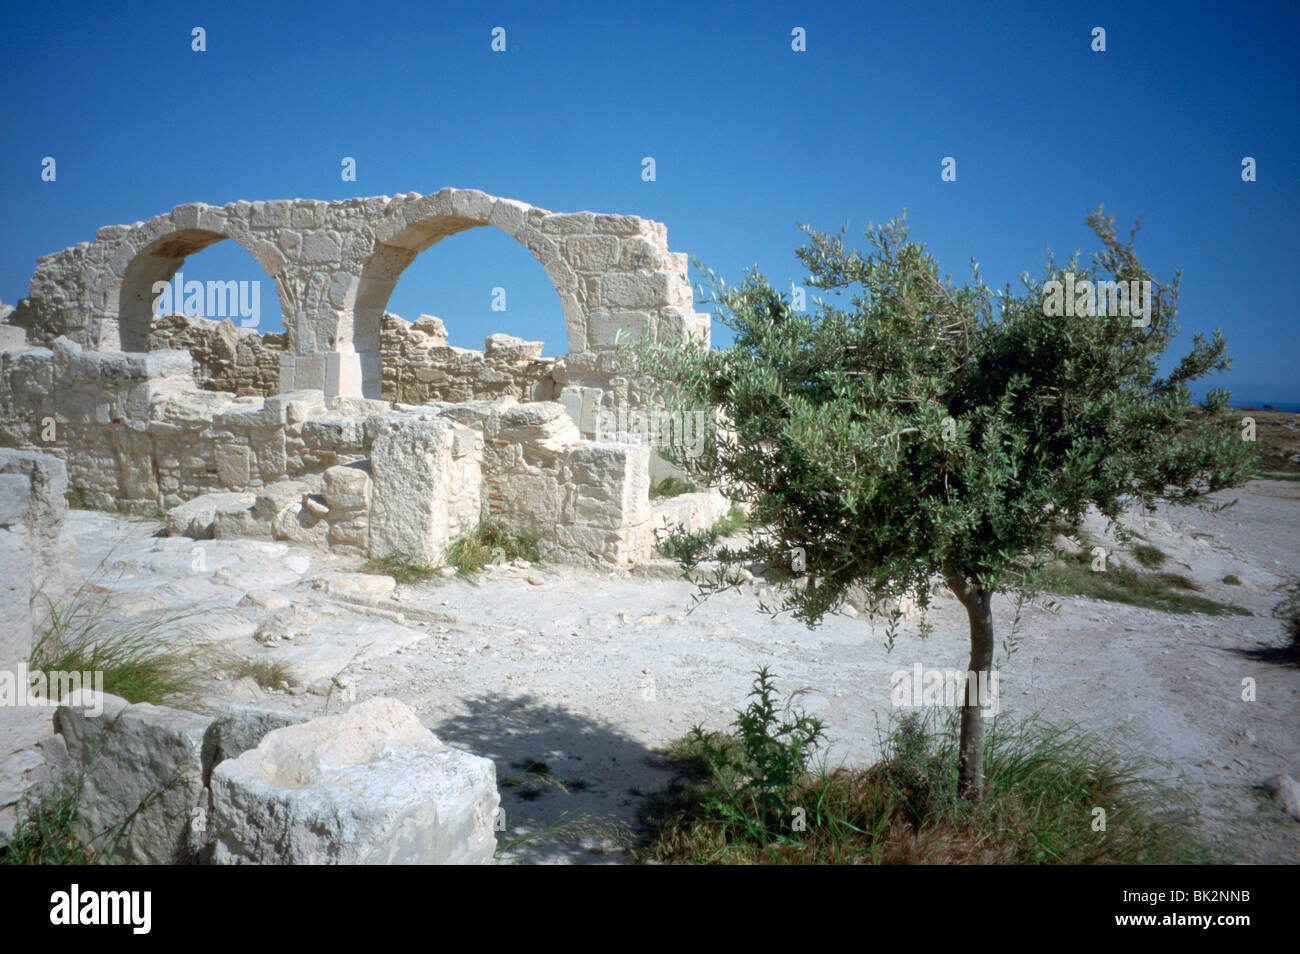 Ruines de la basilique, le curium (Kourion), Chypre, 2001. Banque D'Images